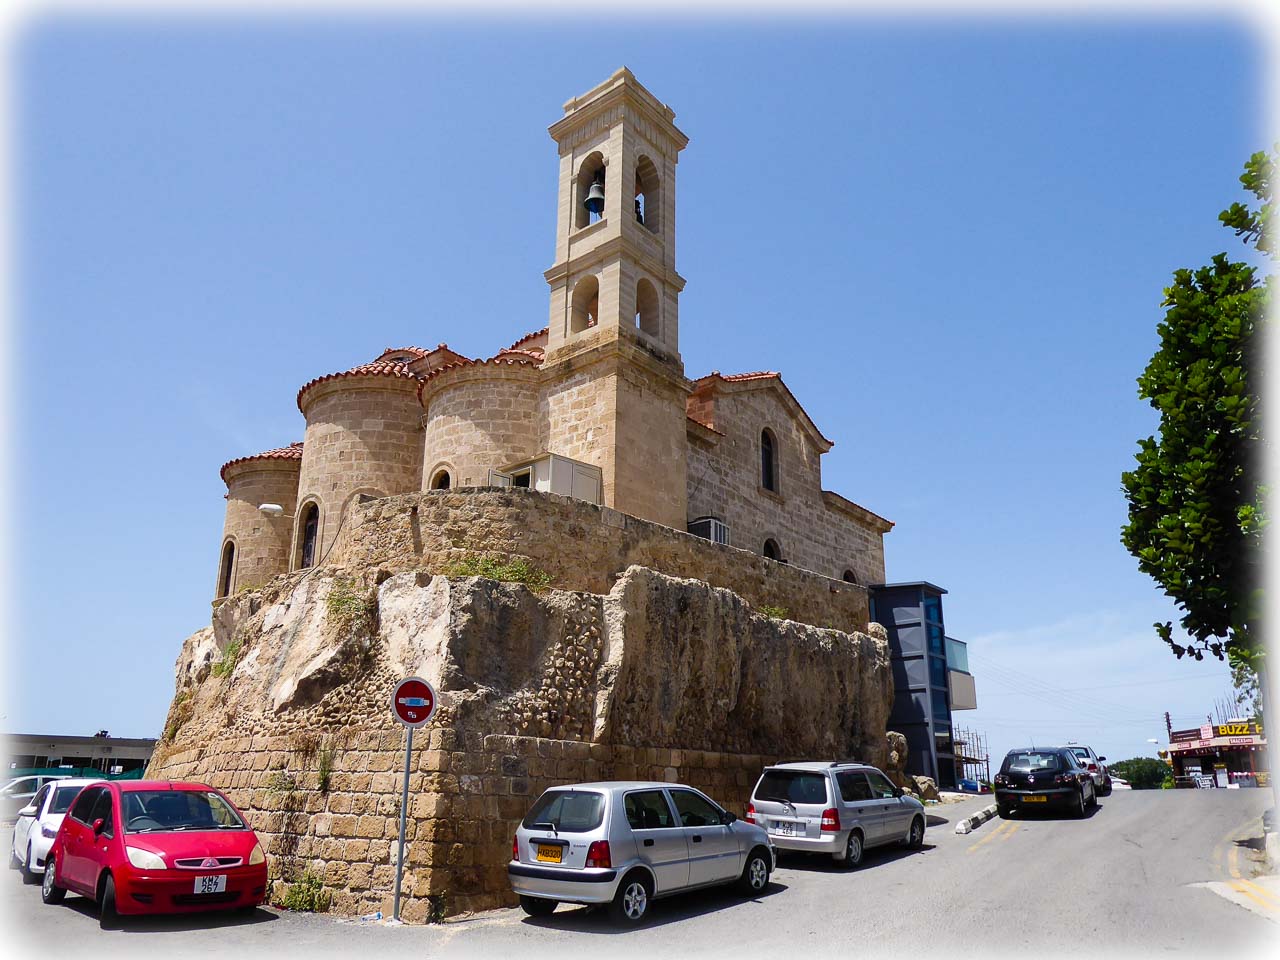 Kościół Panagia Theoskepasti znajdujący się na kamiennym wzgórzu, otoczony drogą z zaparkowanymi samochodami.